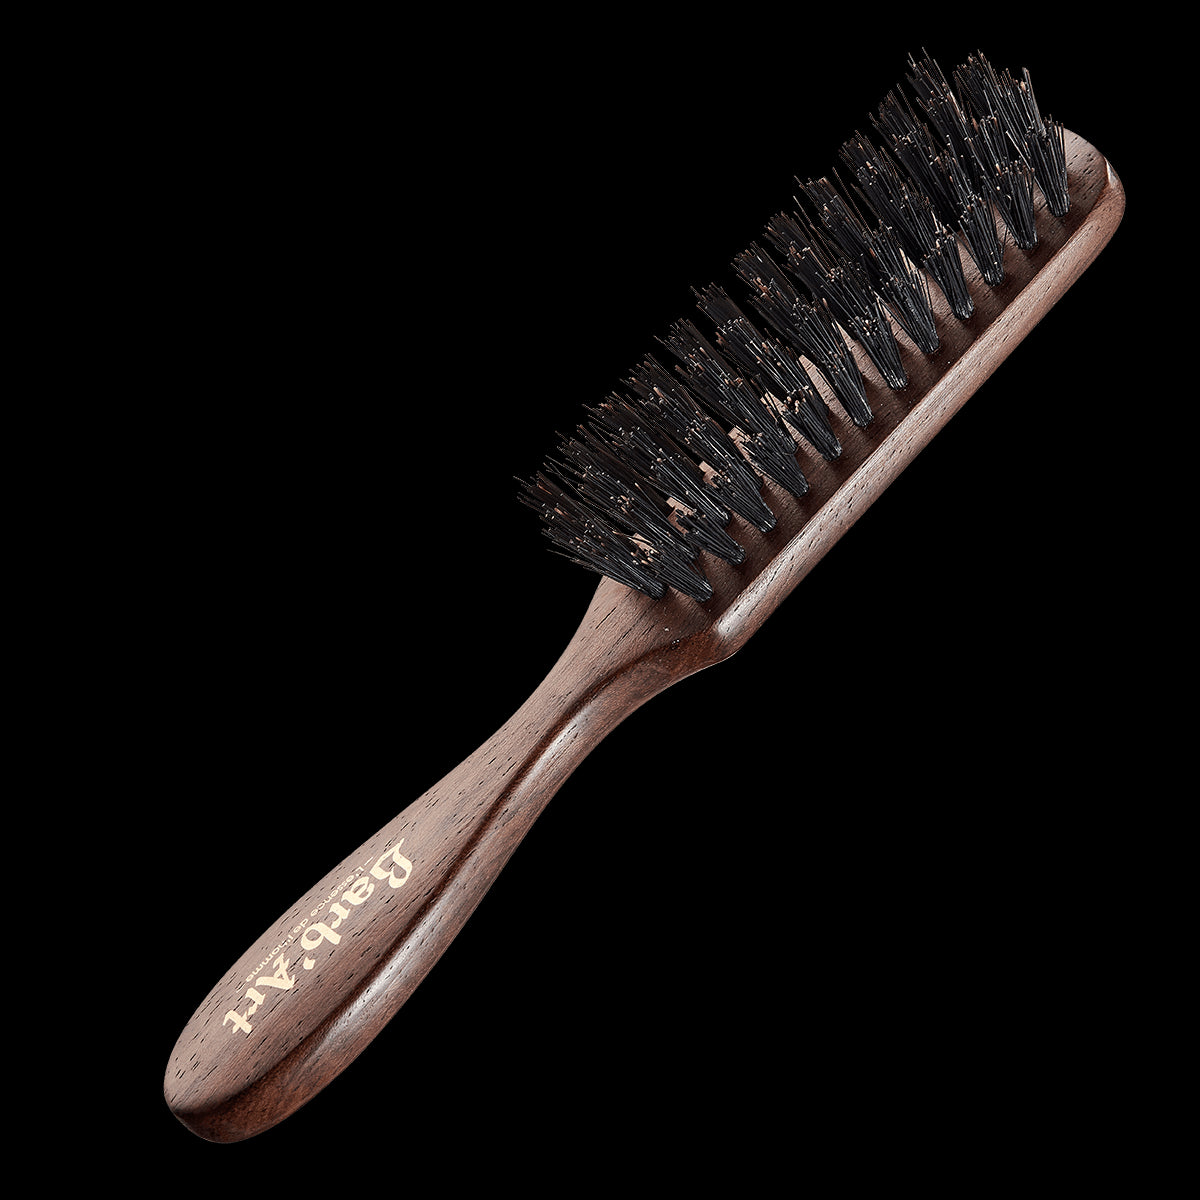 Brosse cheveux en bois, poils naturel de sanglier achat vente